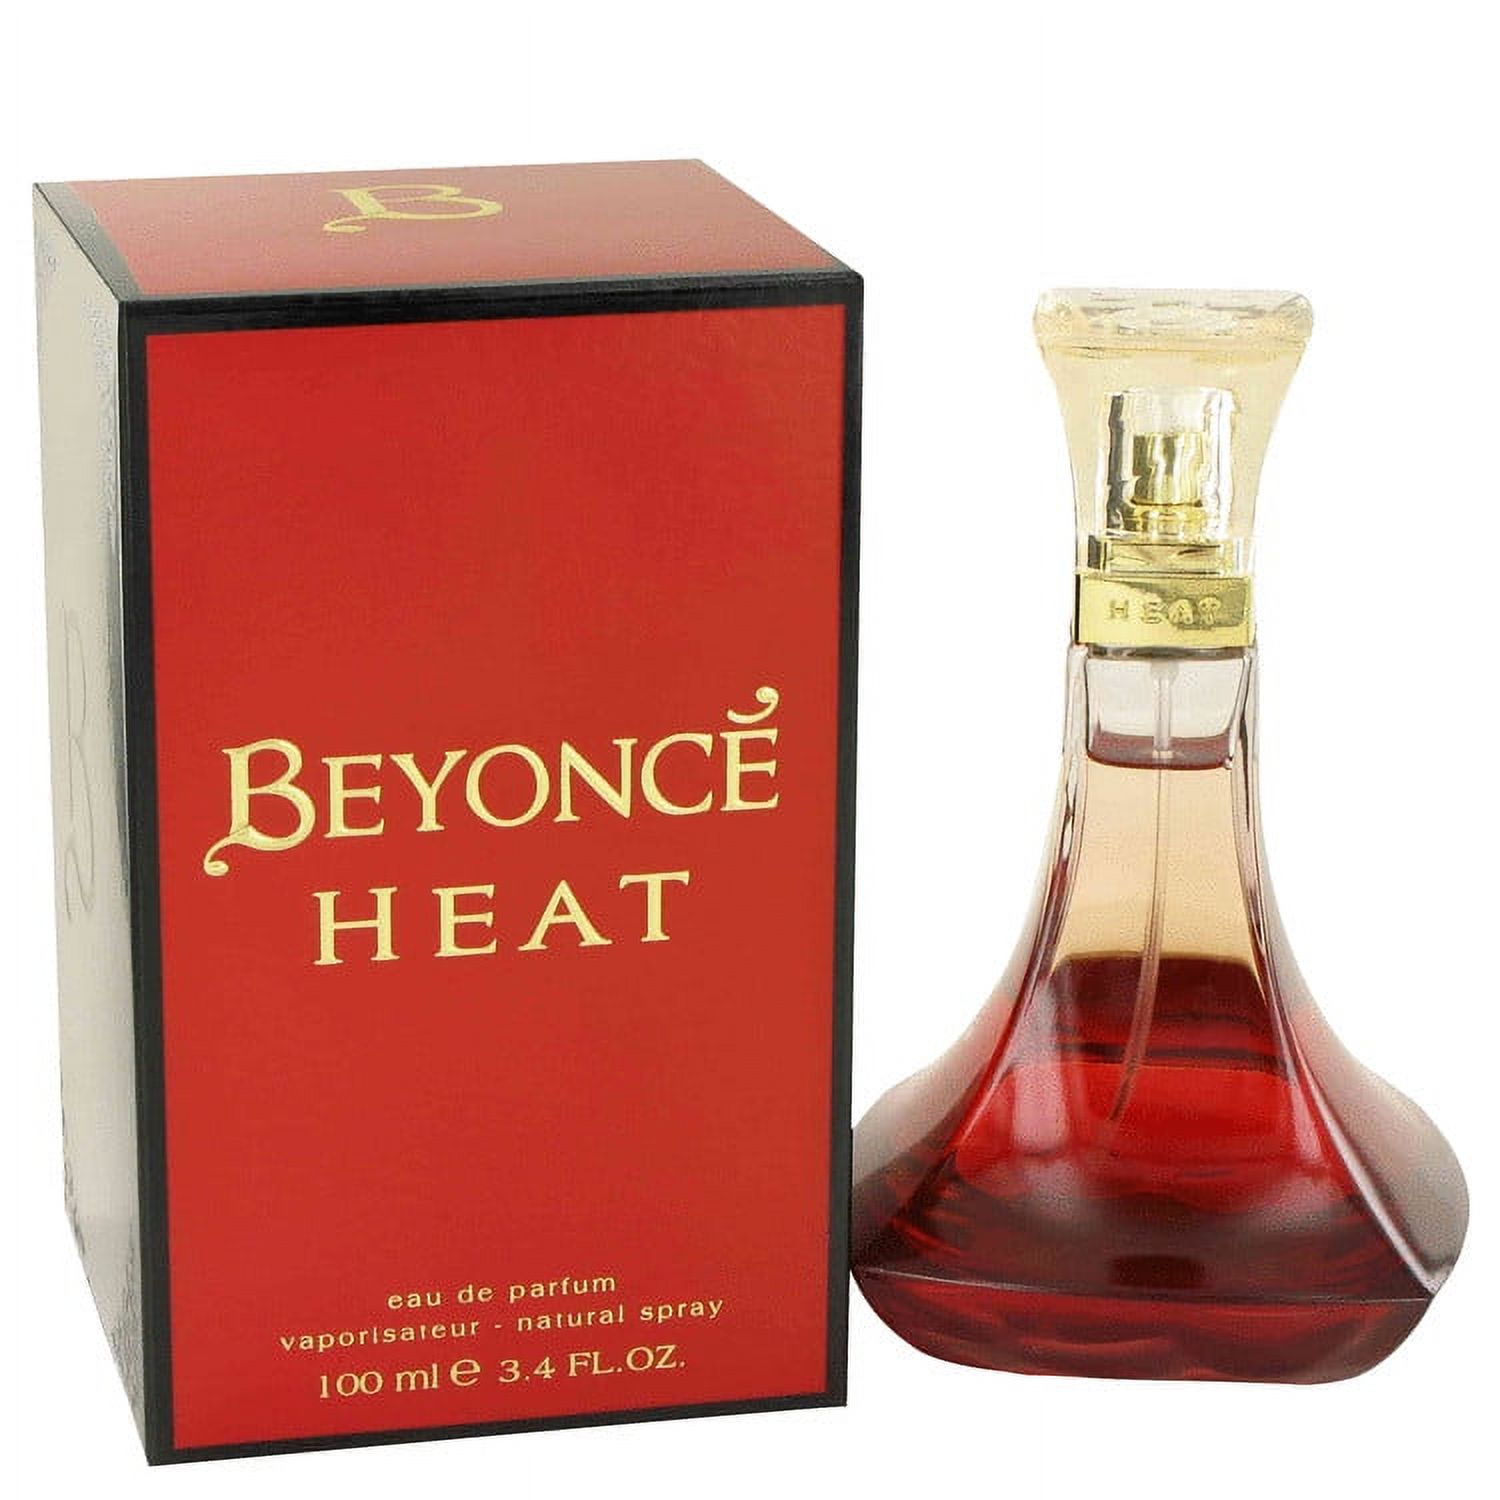 Beyonce Heat Eau De Parfum, Perfume for Women, 3.4 oz - image 1 of 3